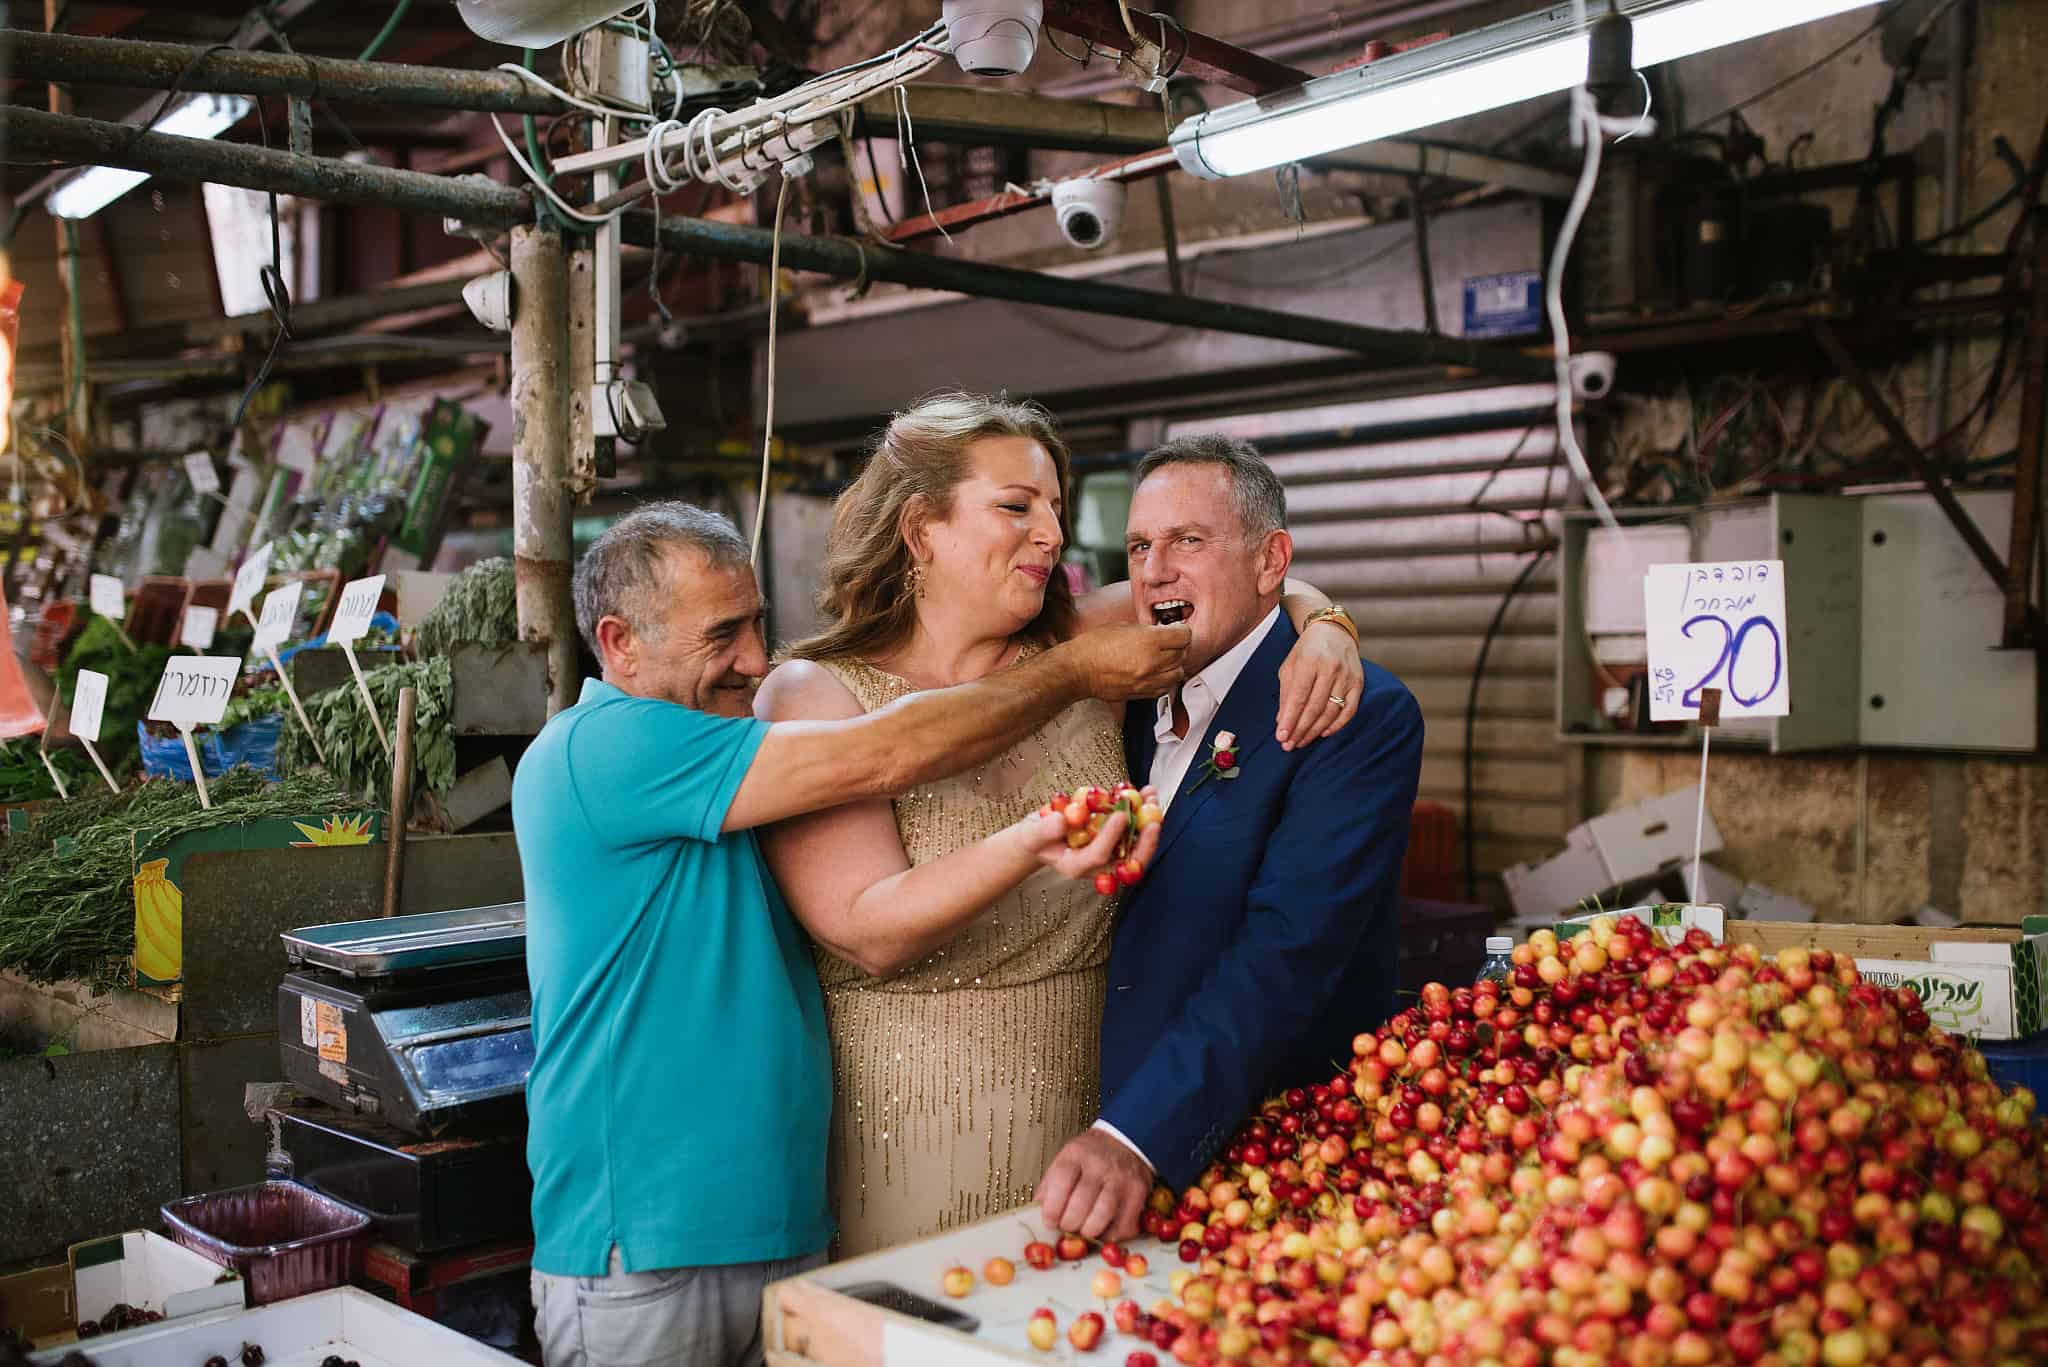 עדינה סוסמן ובעלה ג'יי שופט (מימין) טועמים דובדבנים אצל רוכל בשוק הכרמל ביום חתונתם (צילום: באדיבות עדינה סוסמן)